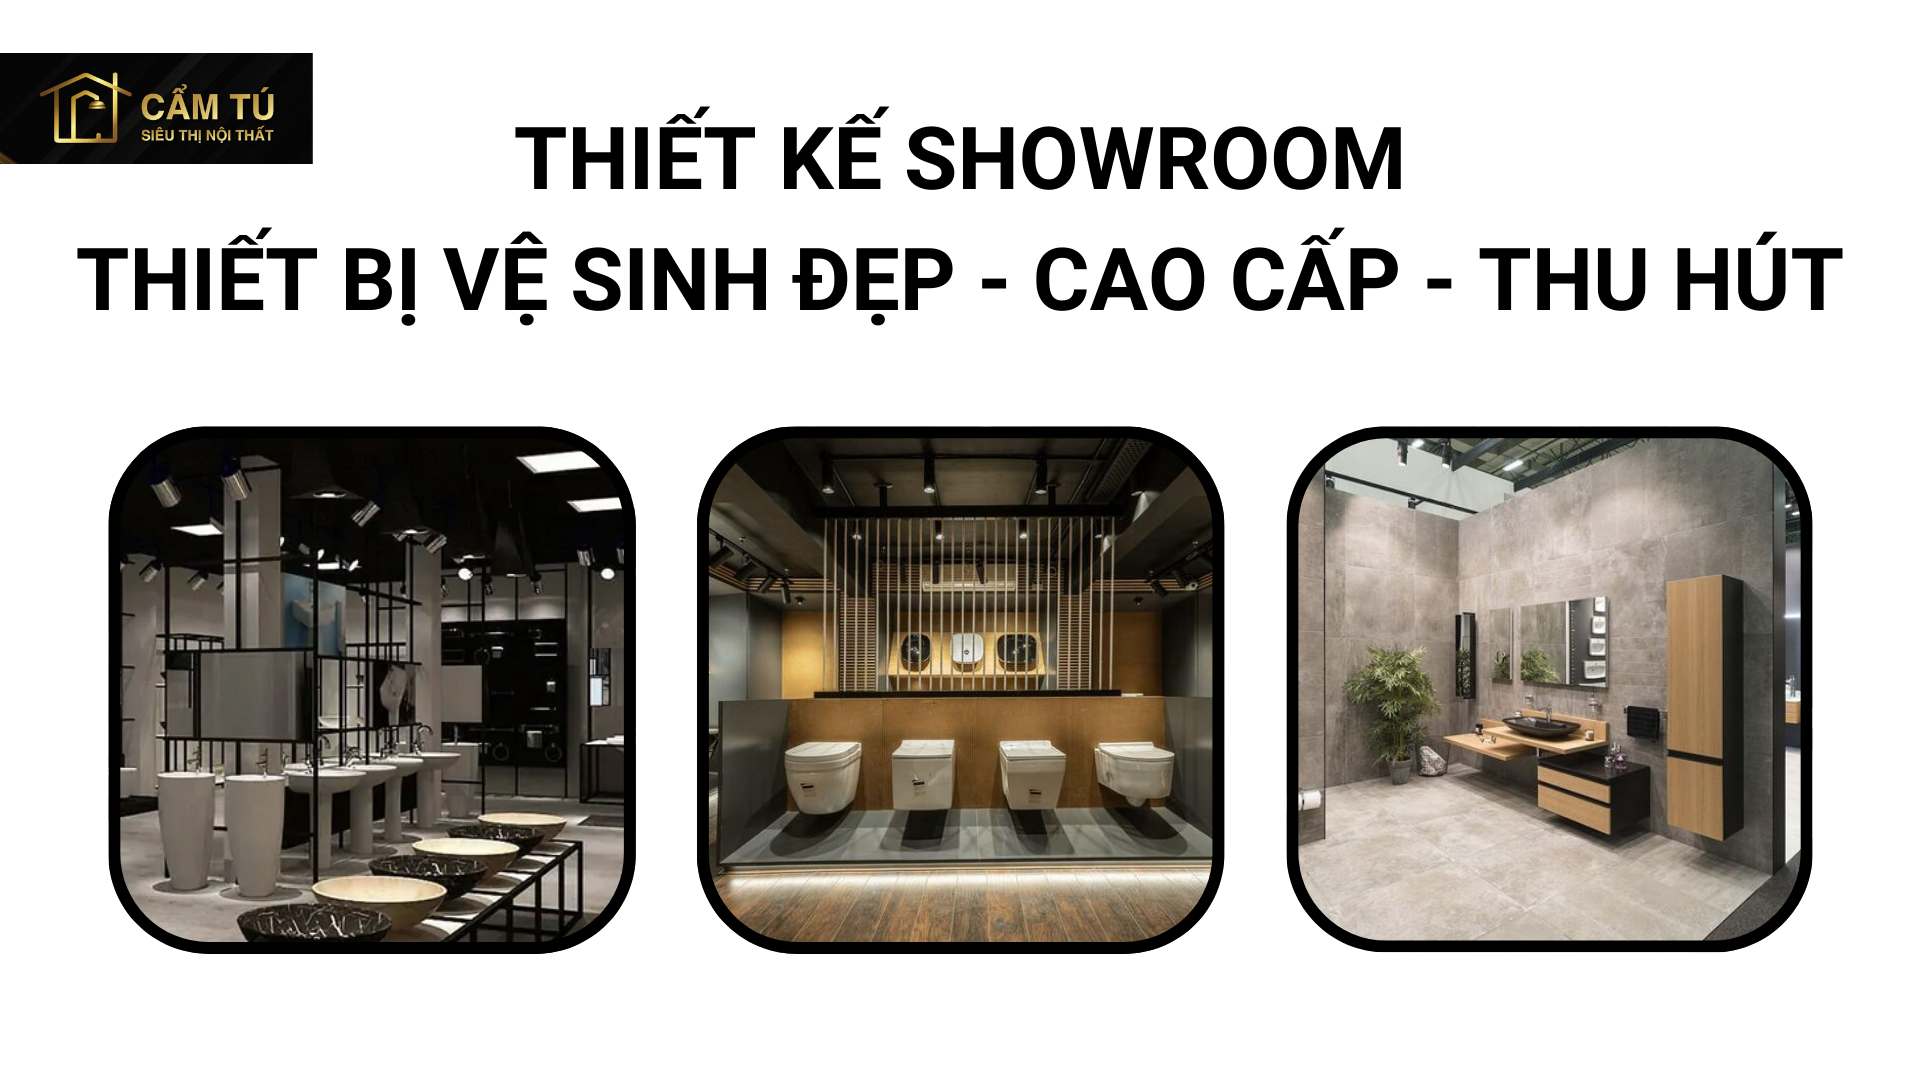 Thiết kế showroom thiết bị vệ sinh đẹp, cao cấp, thu hút